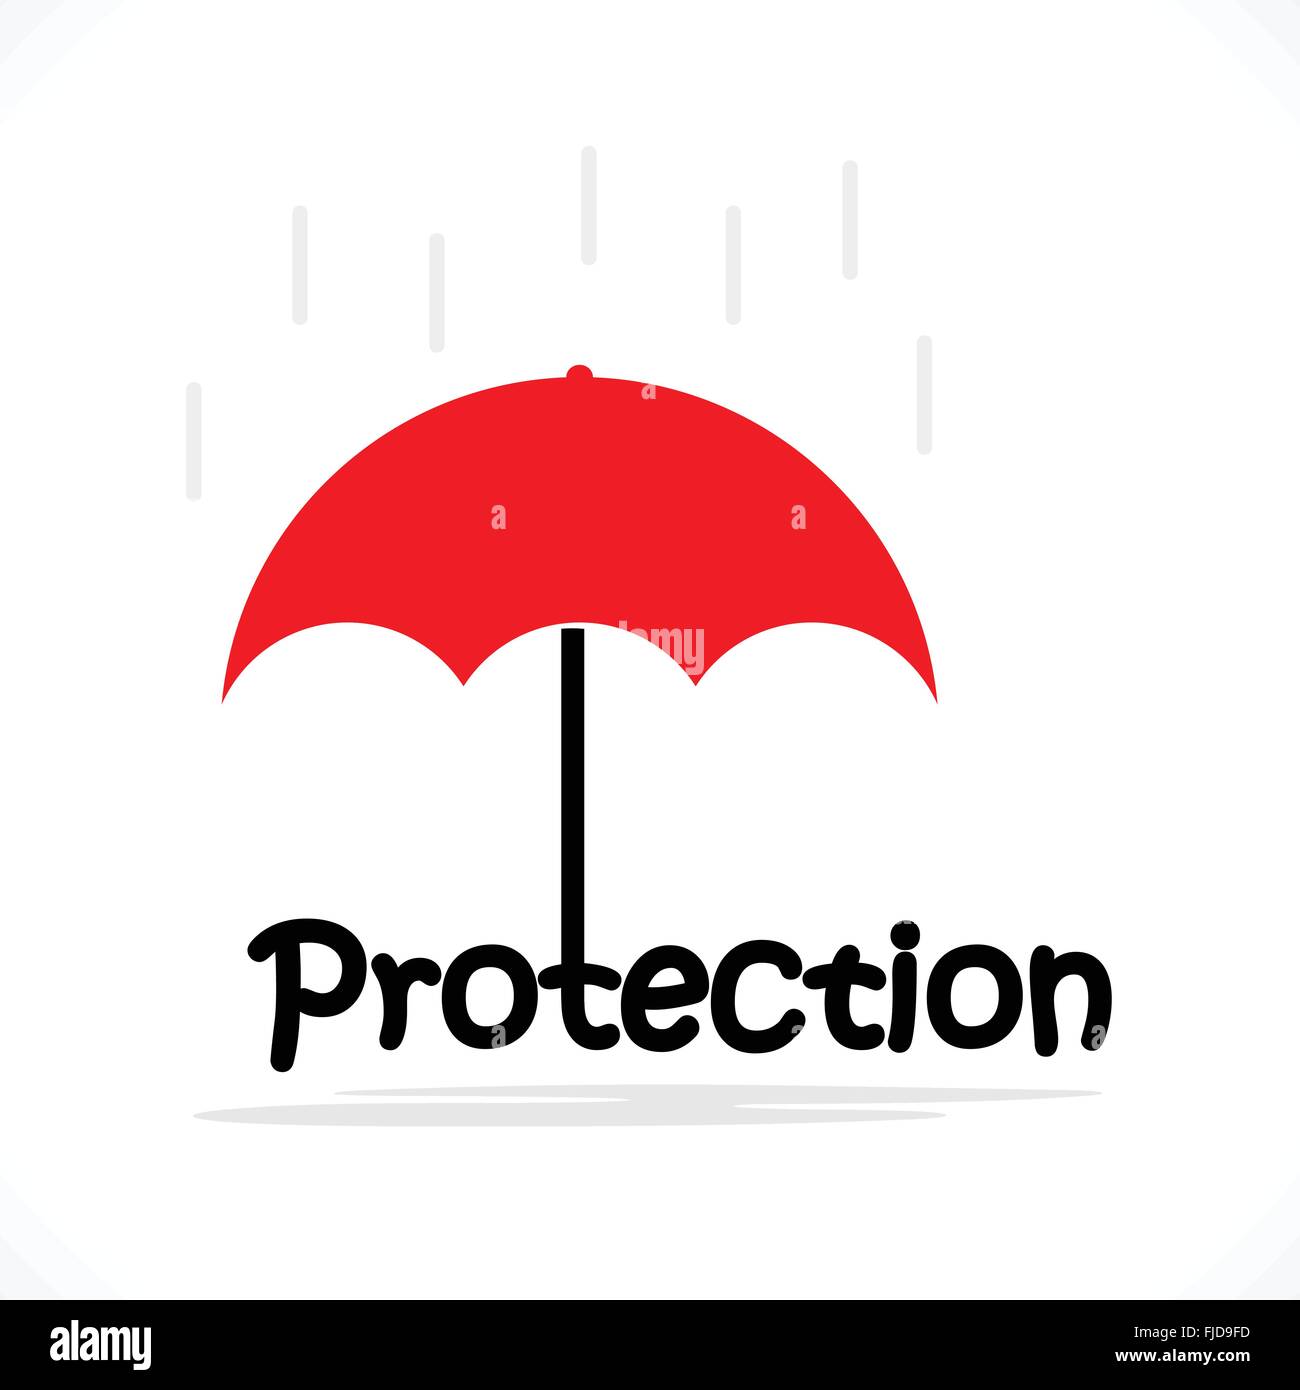 Schutz Titeltexte mit dem roten Dach. Schutz und Sicherheit-Konzept. Vektor-illustration Stock Vektor